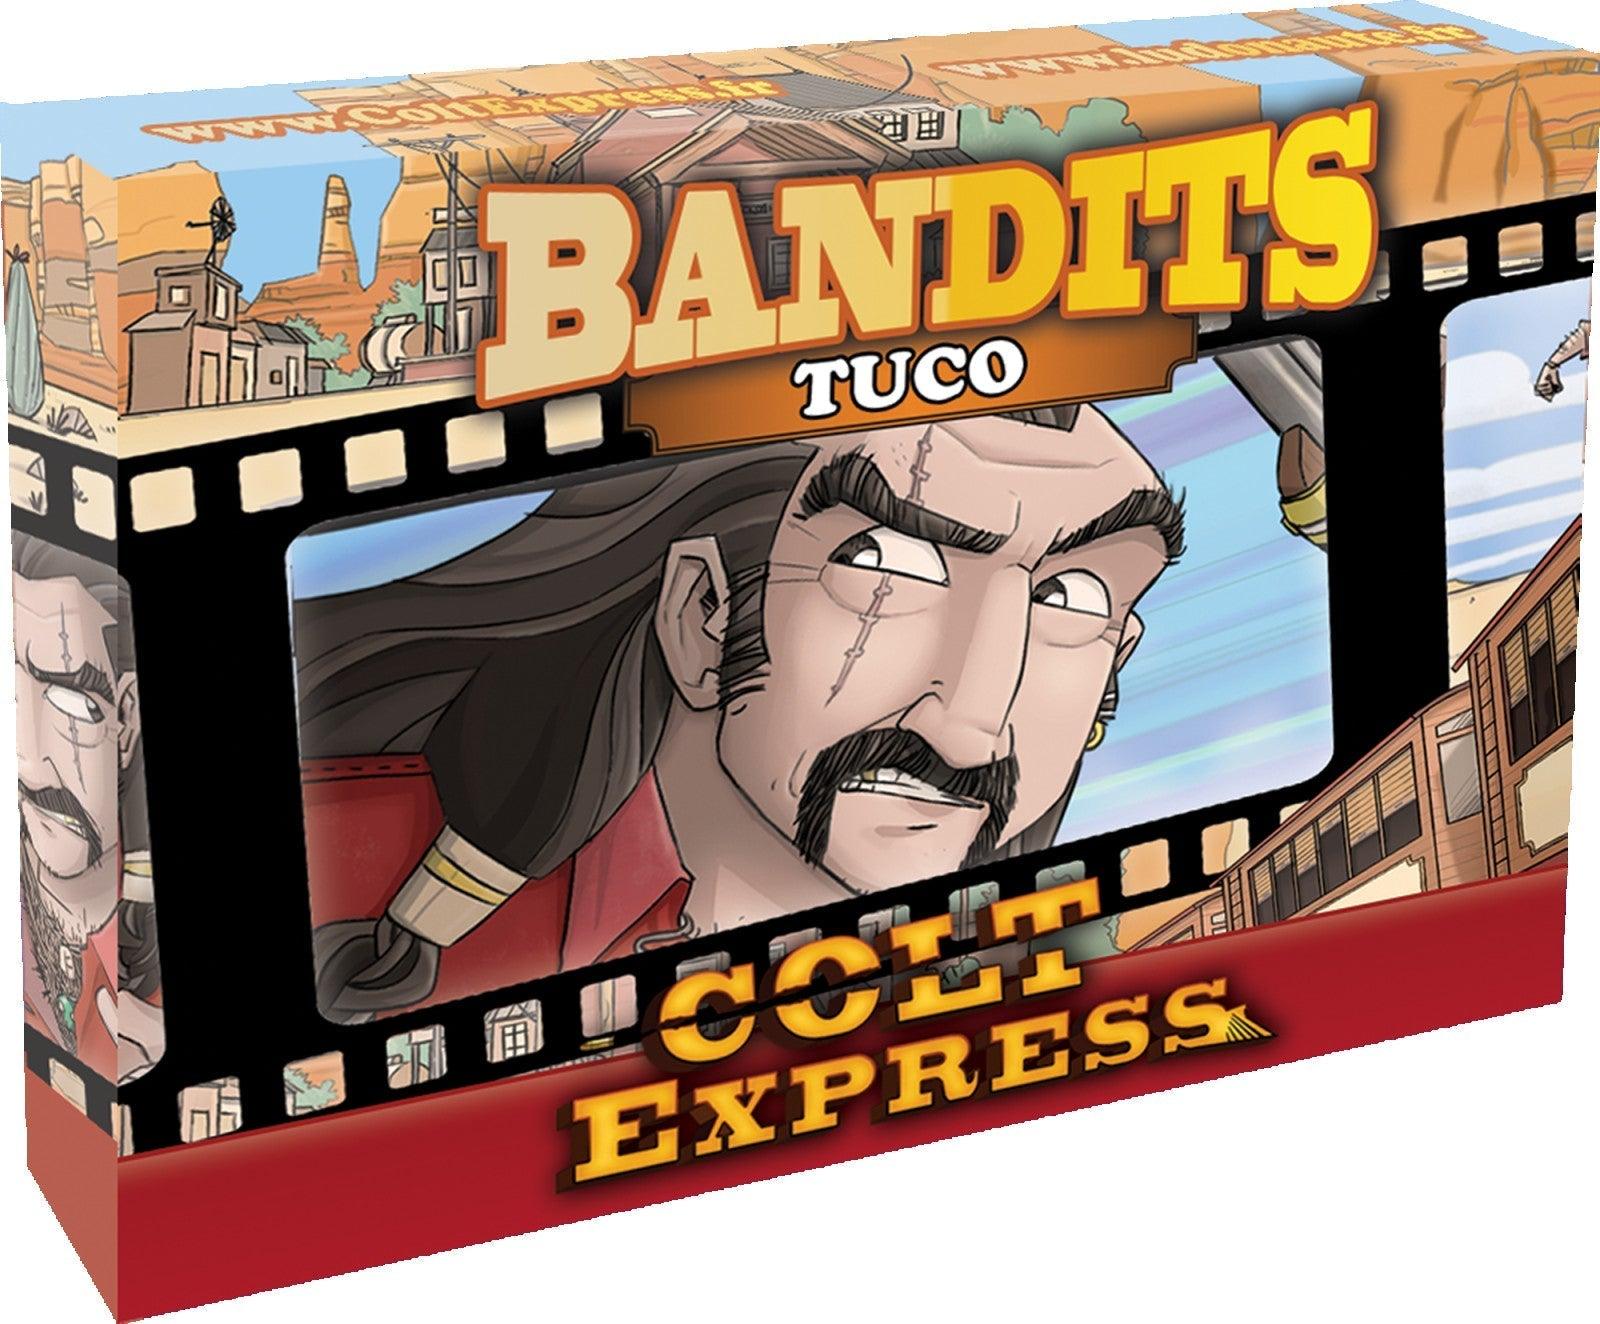 VR-60274 Colt Express Bandit Pack - Tuco Expansion - Ludonaute - Titan Pop Culture